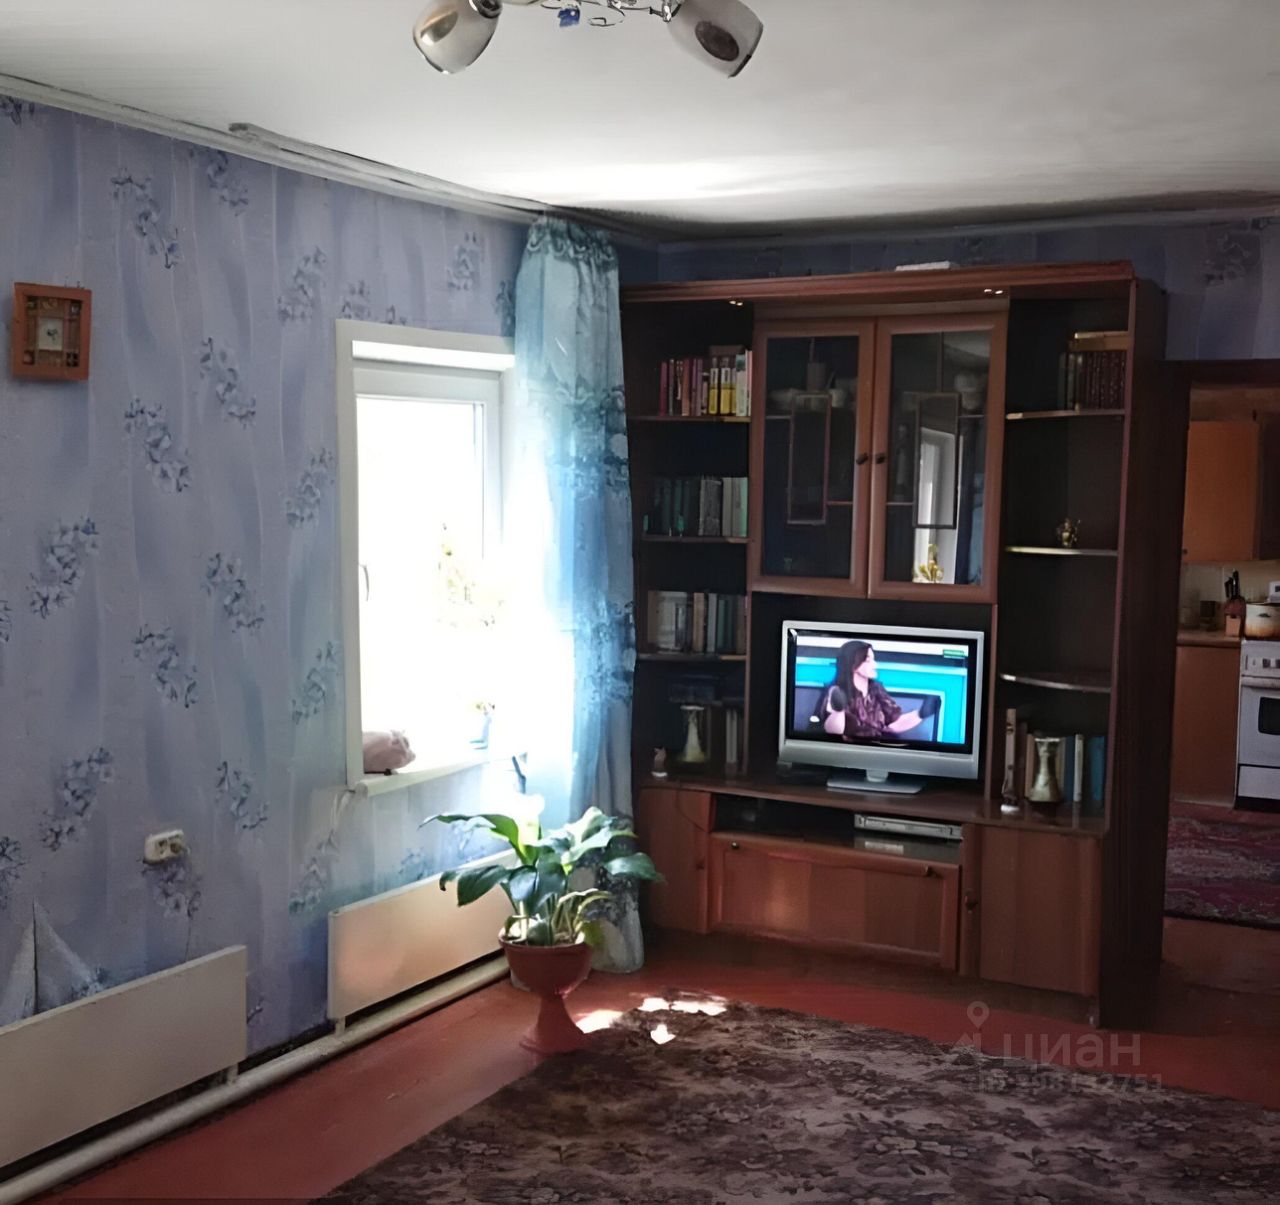 Купить дом до 5 млн рублей в Рубцовске. Найдено 103 объявления.